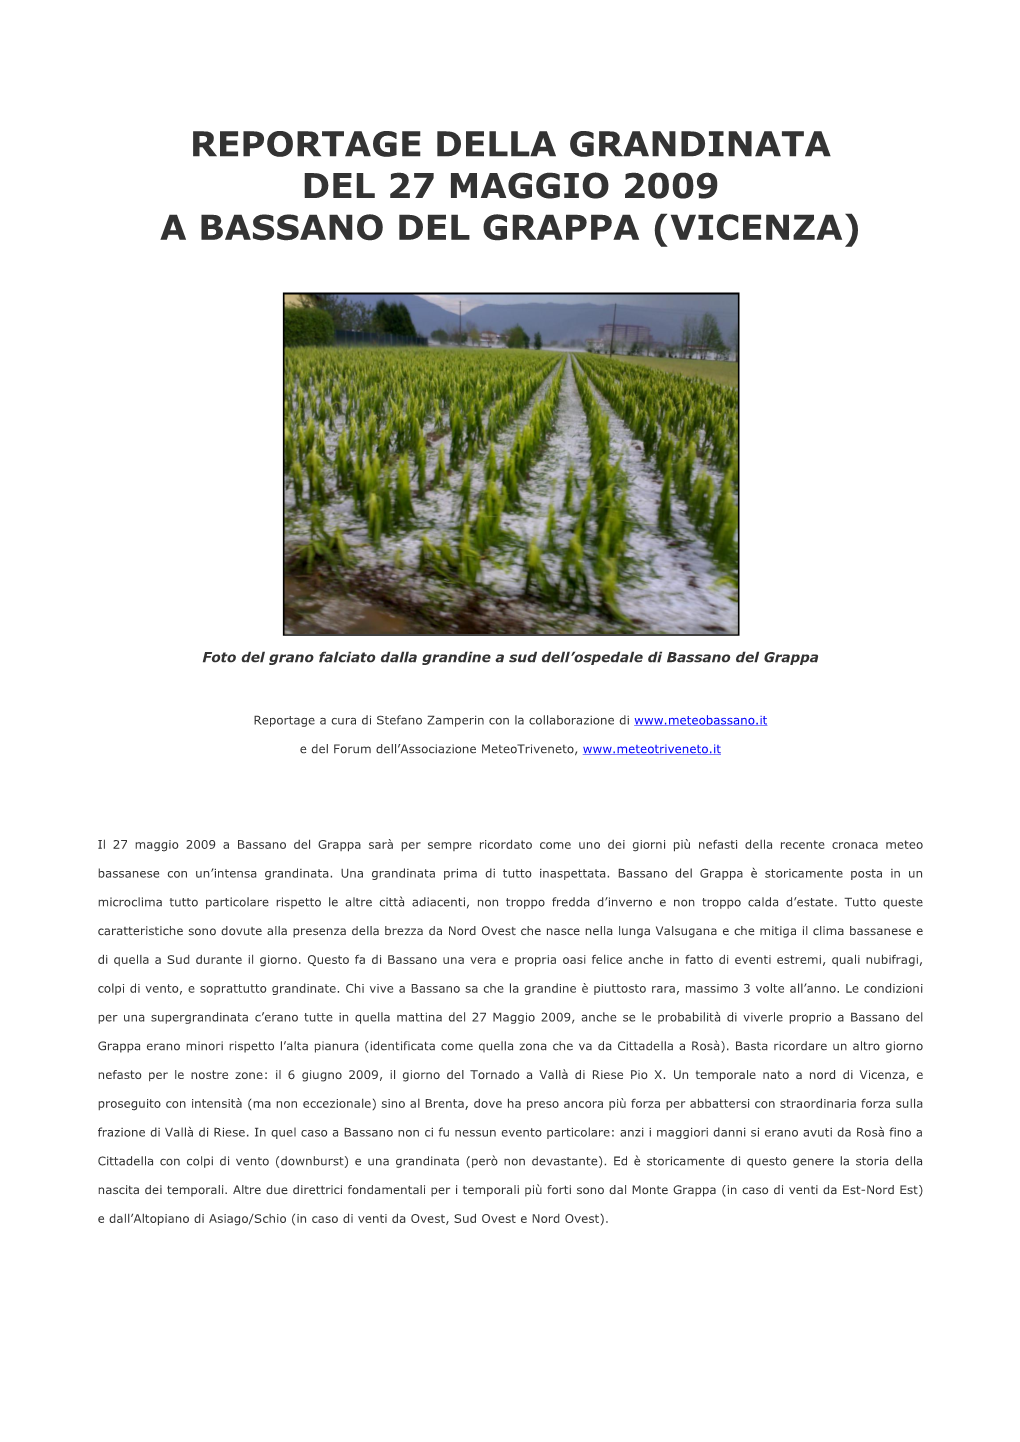 Reportage Della Grandinata Del 27 Maggio 2009 a Bassano Del Grappa (Vicenza)